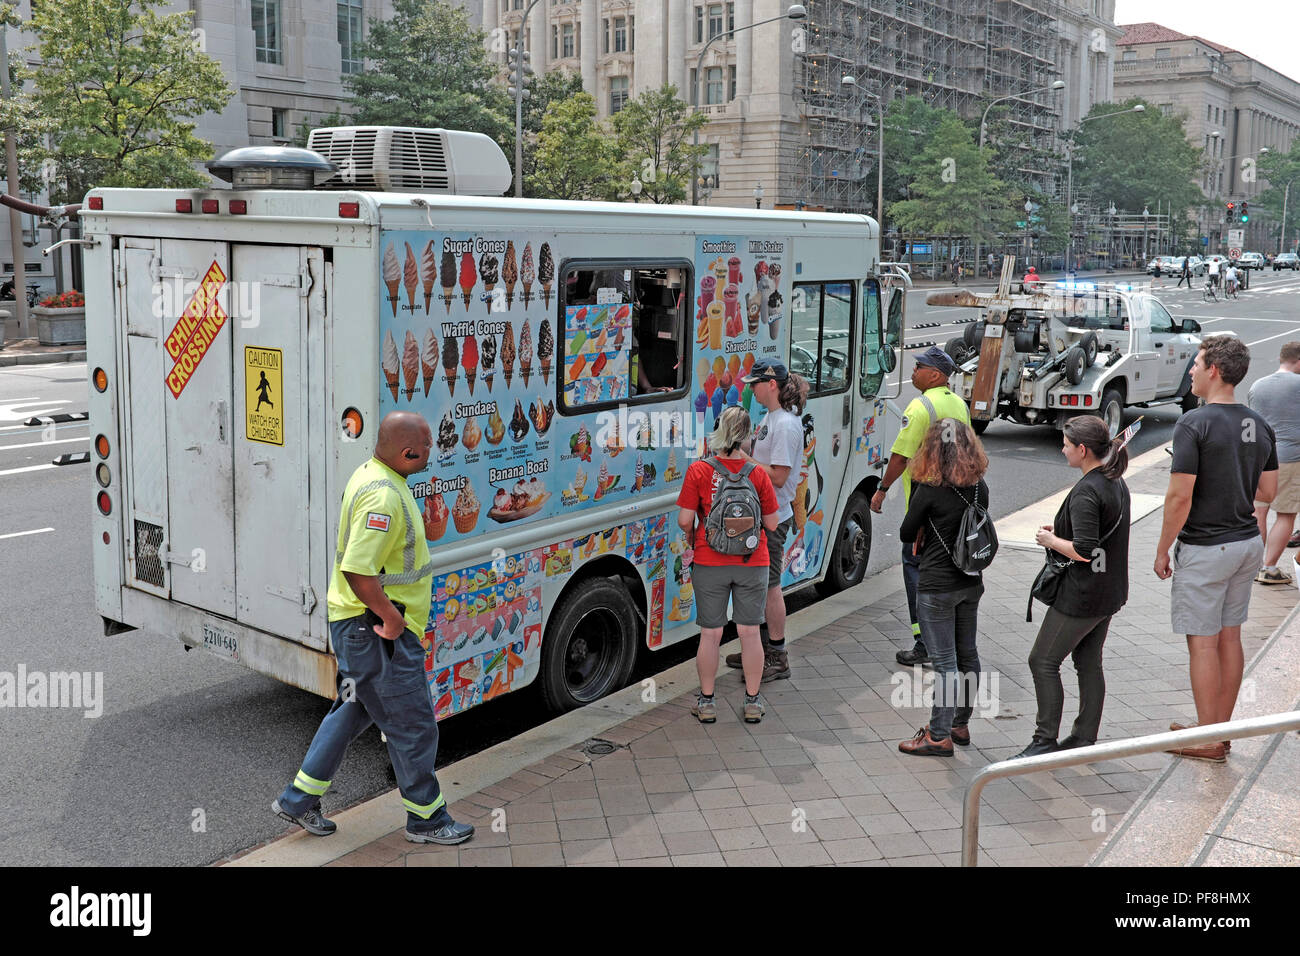 Il caldo a Washington DC in agosto attira le persone sul camion dei gelati per rinfrescarsi. A causa della sua posizione, il carrello viene citato e trainato. Foto Stock